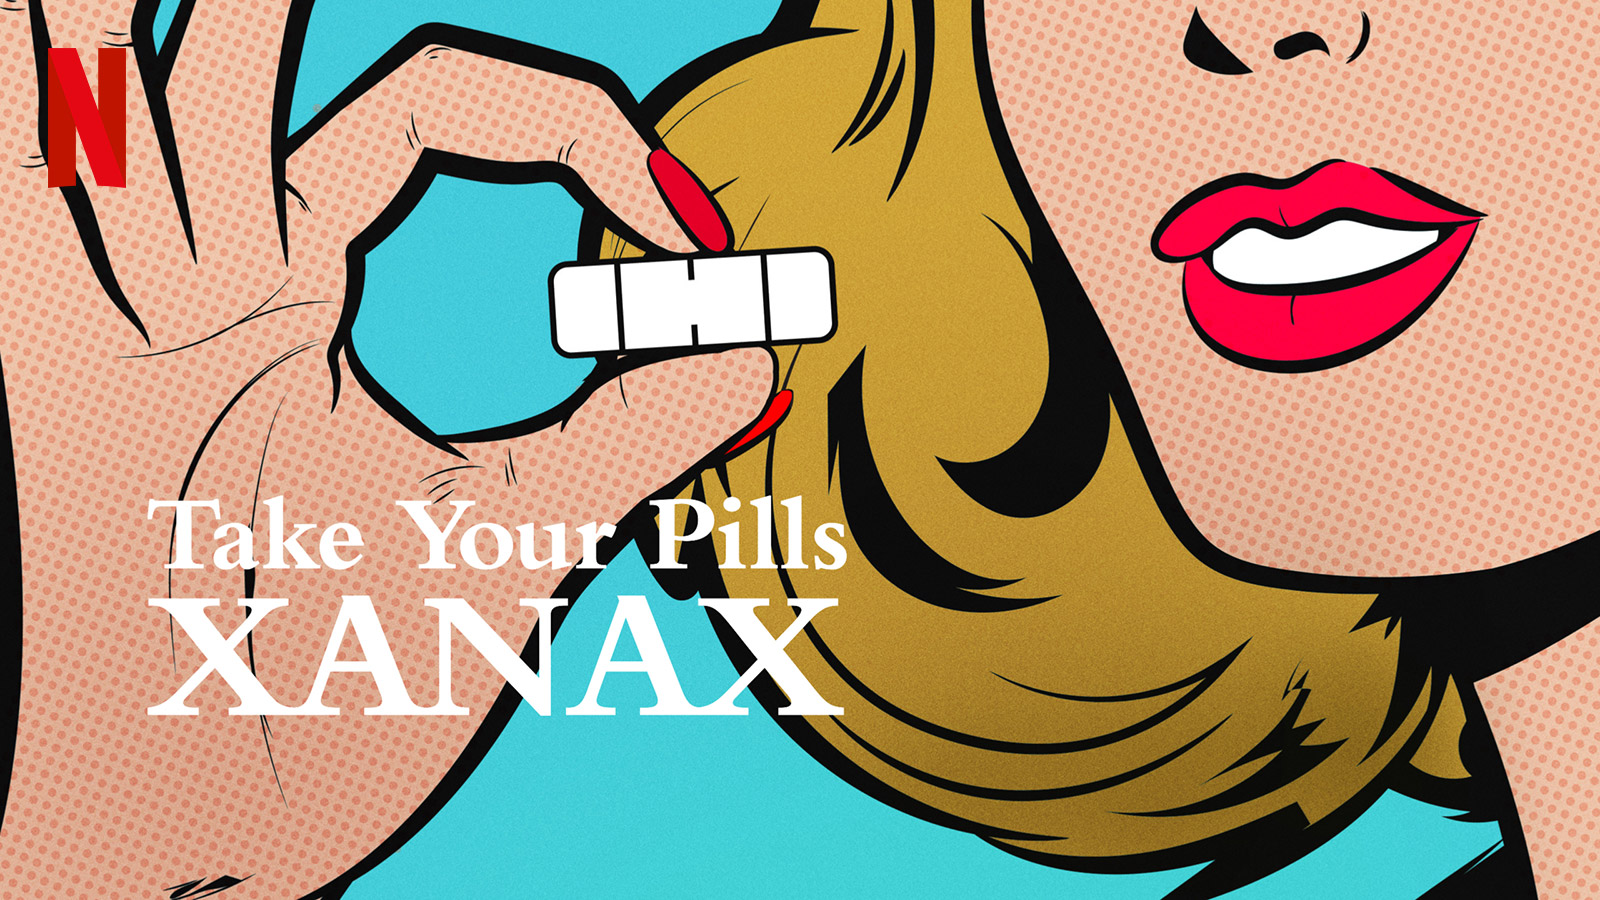 Take Your Pills Xanax